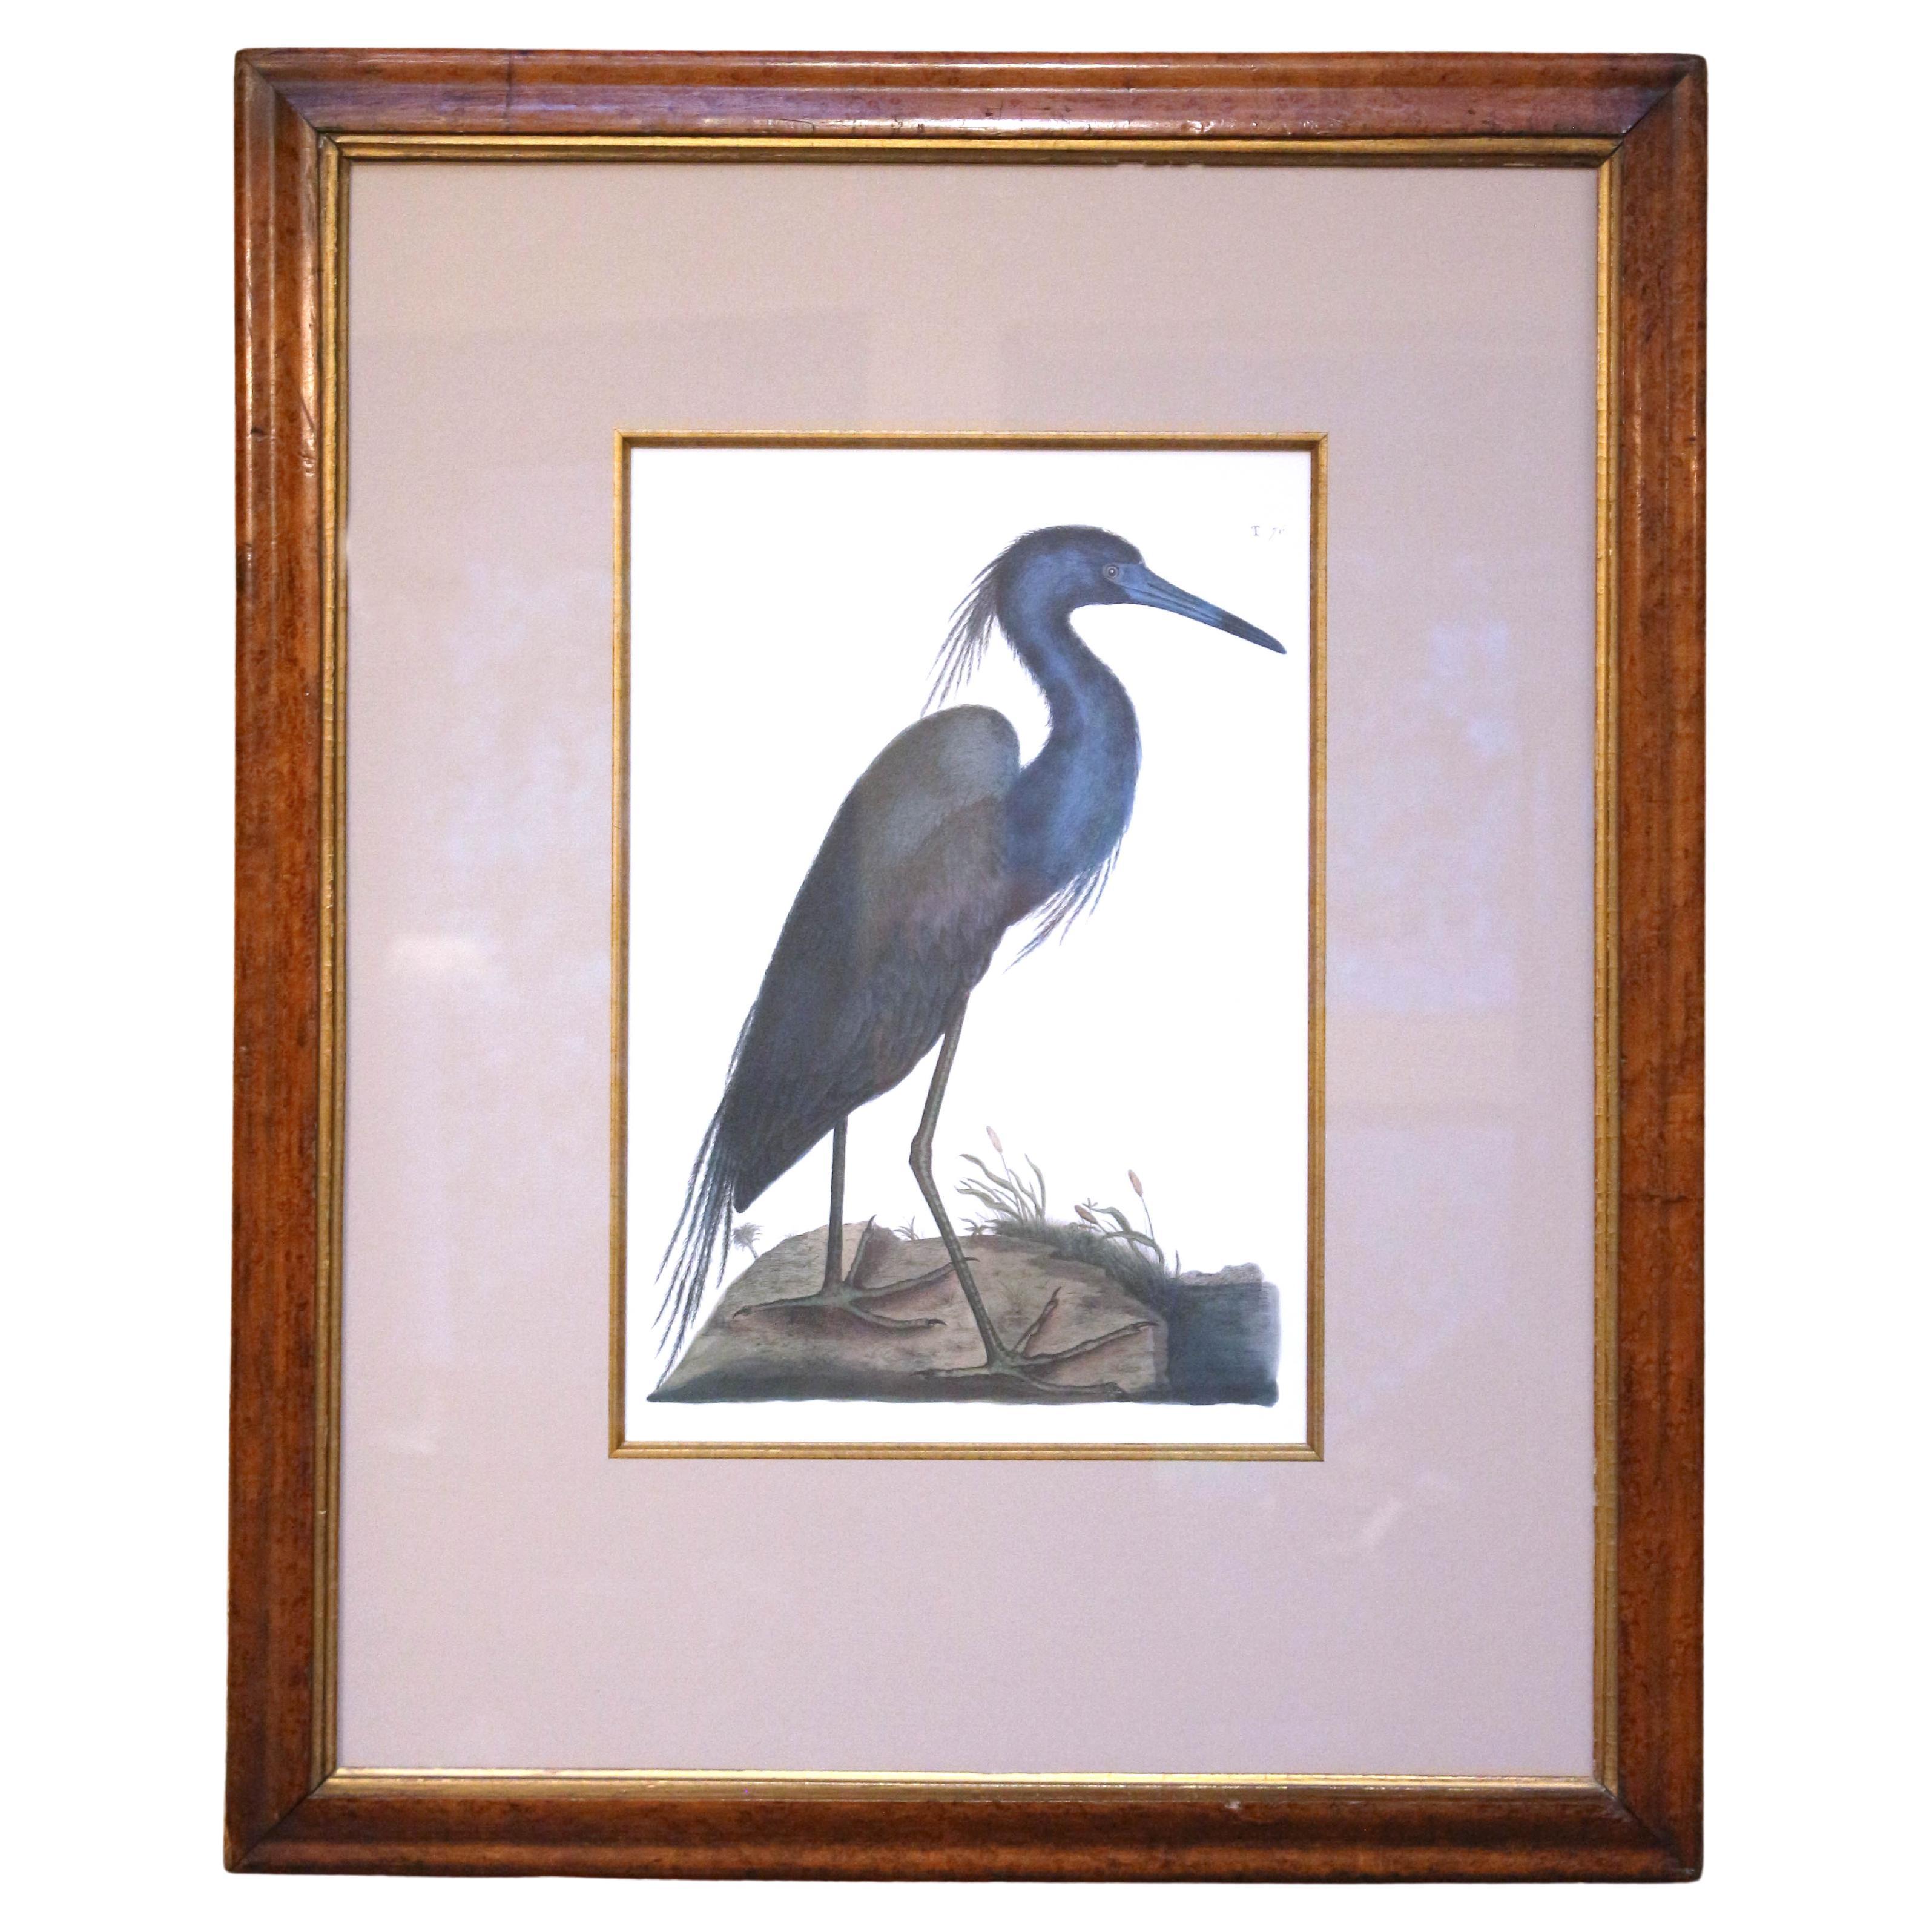 Impression « The Blue Heron » du 20e siècle, une copie de la gravure de Mark Catesby